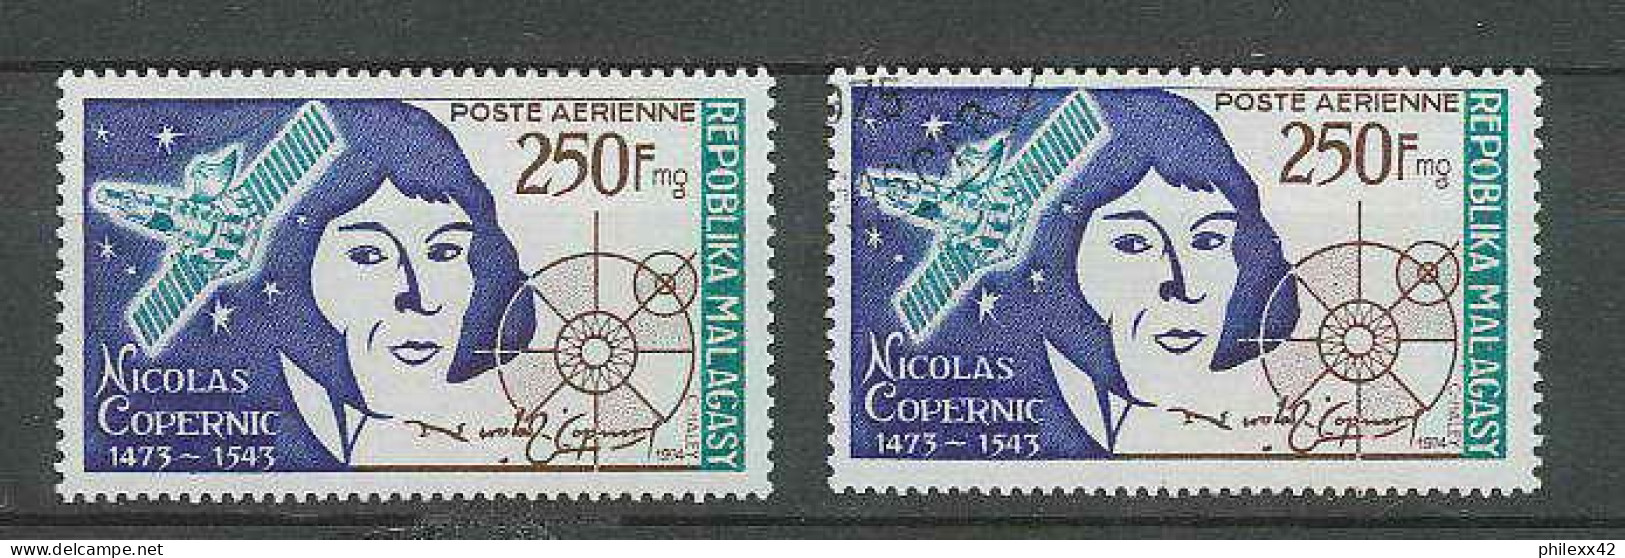 1480/ Espace (space) Neuf ** MNH Madagascar Malagasy Copernic Copernicus Kopernik 134 + USED - Africa